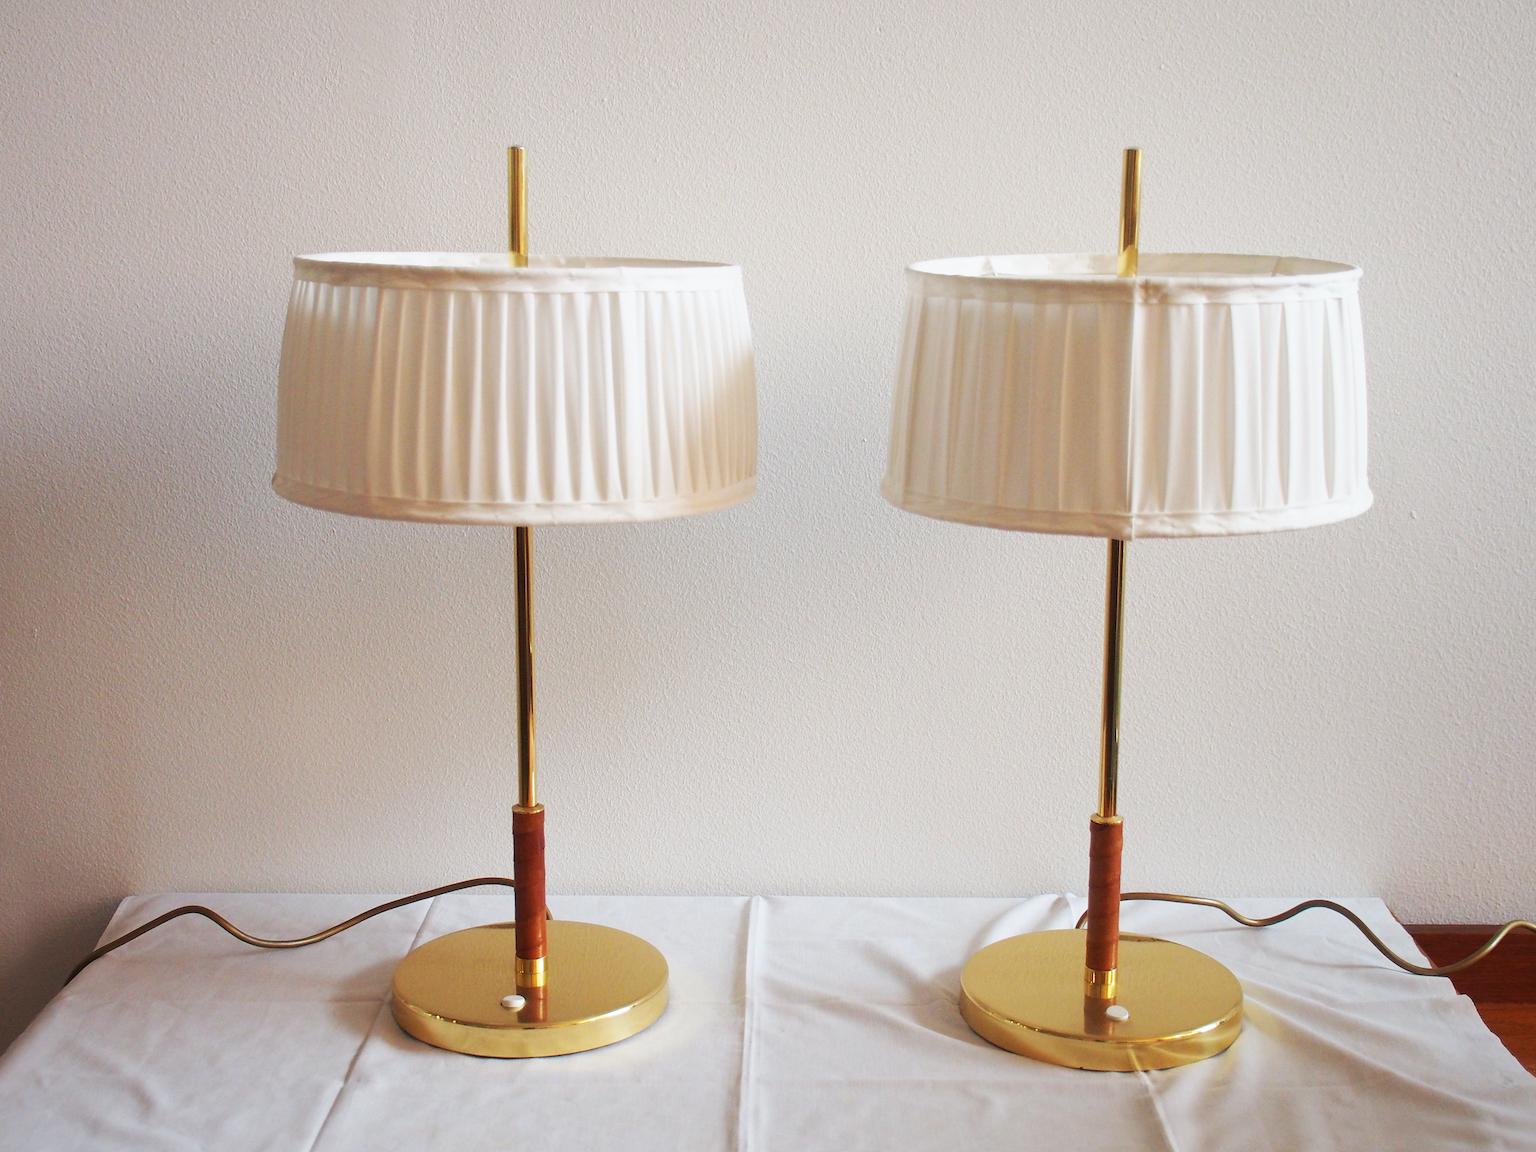 Paire de lampes de table en laiton avec détails en cuir brun. Fabriqué en Suède par Örsjö Industri. Abats-jour en tissu blanc légèrement différents.